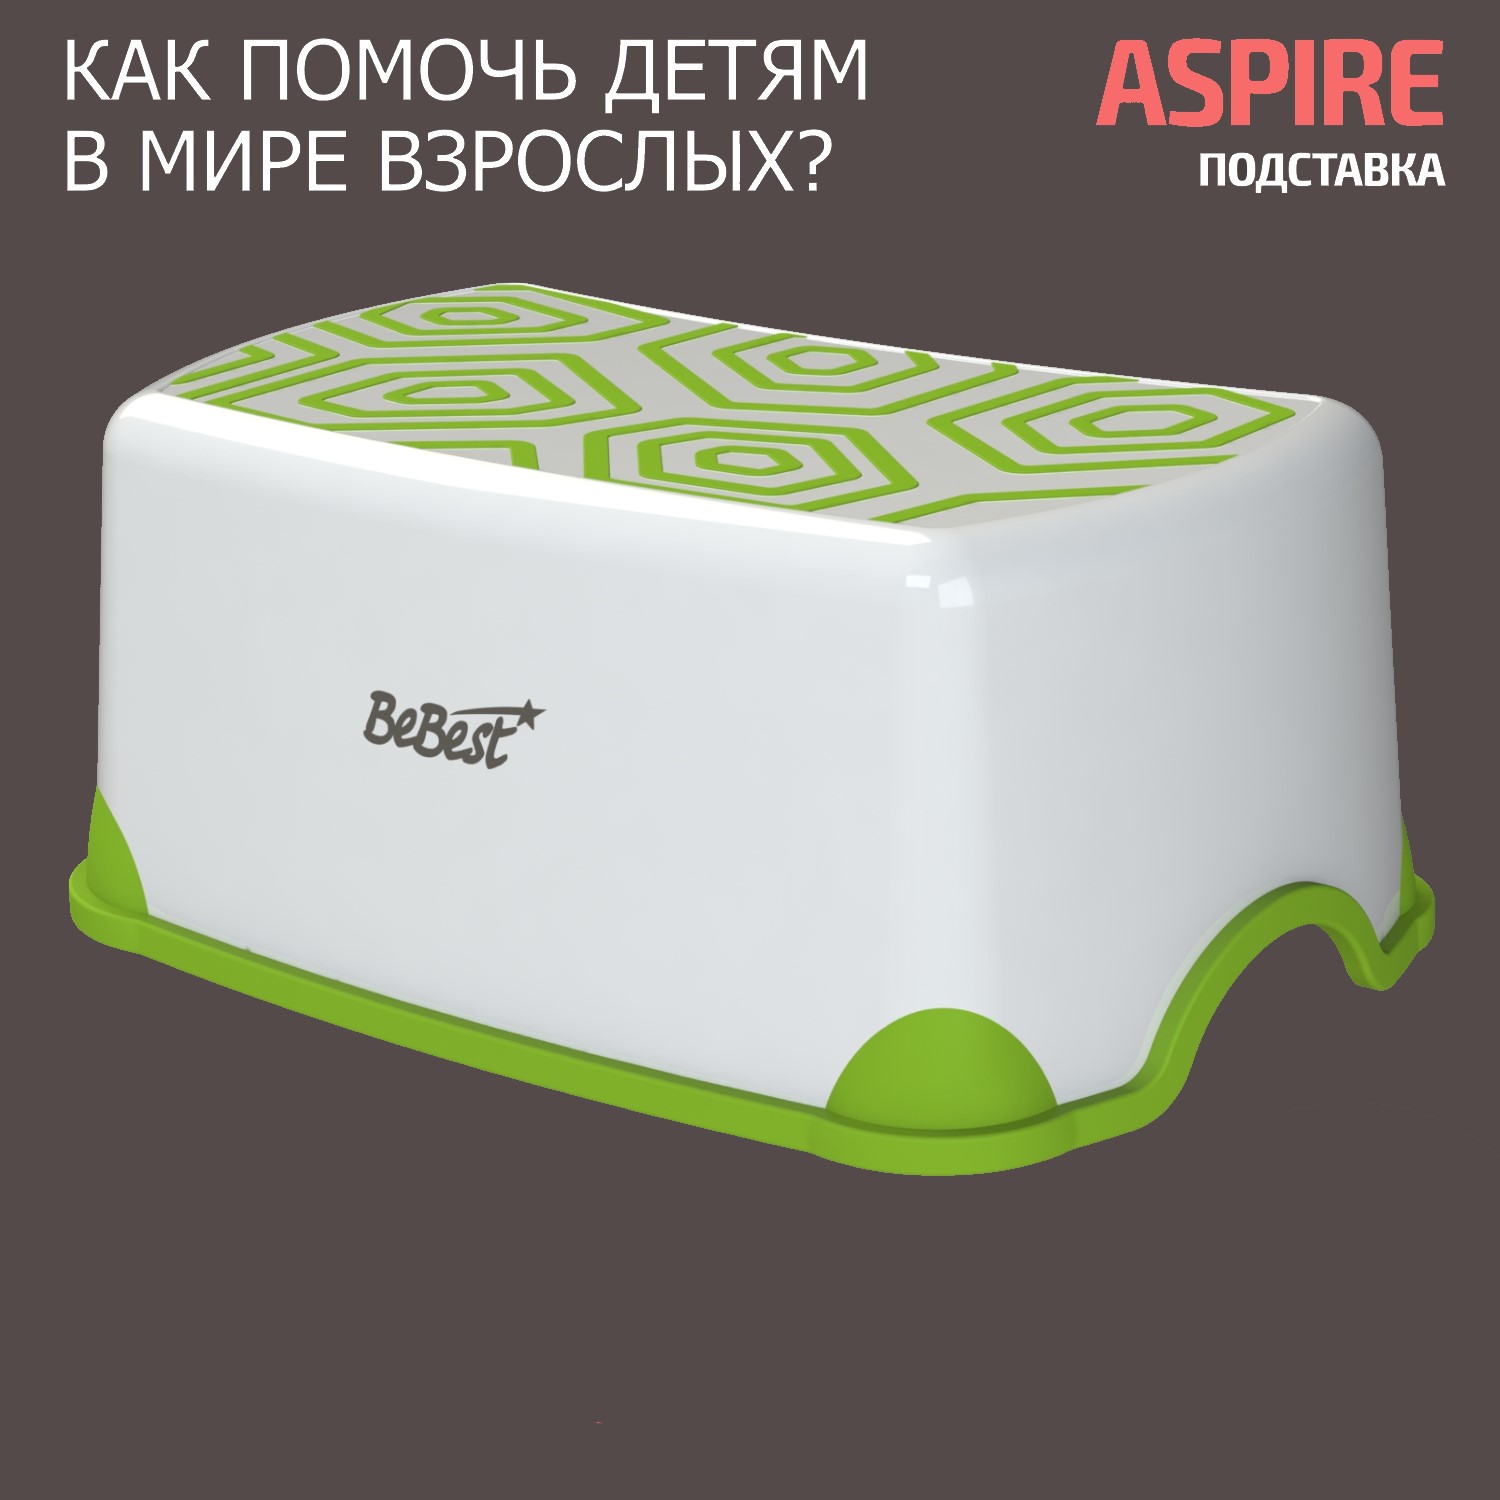 Подставка-табурет для детей BeBest Aspire бело-зеленый mitsubishi galant legnum aspire